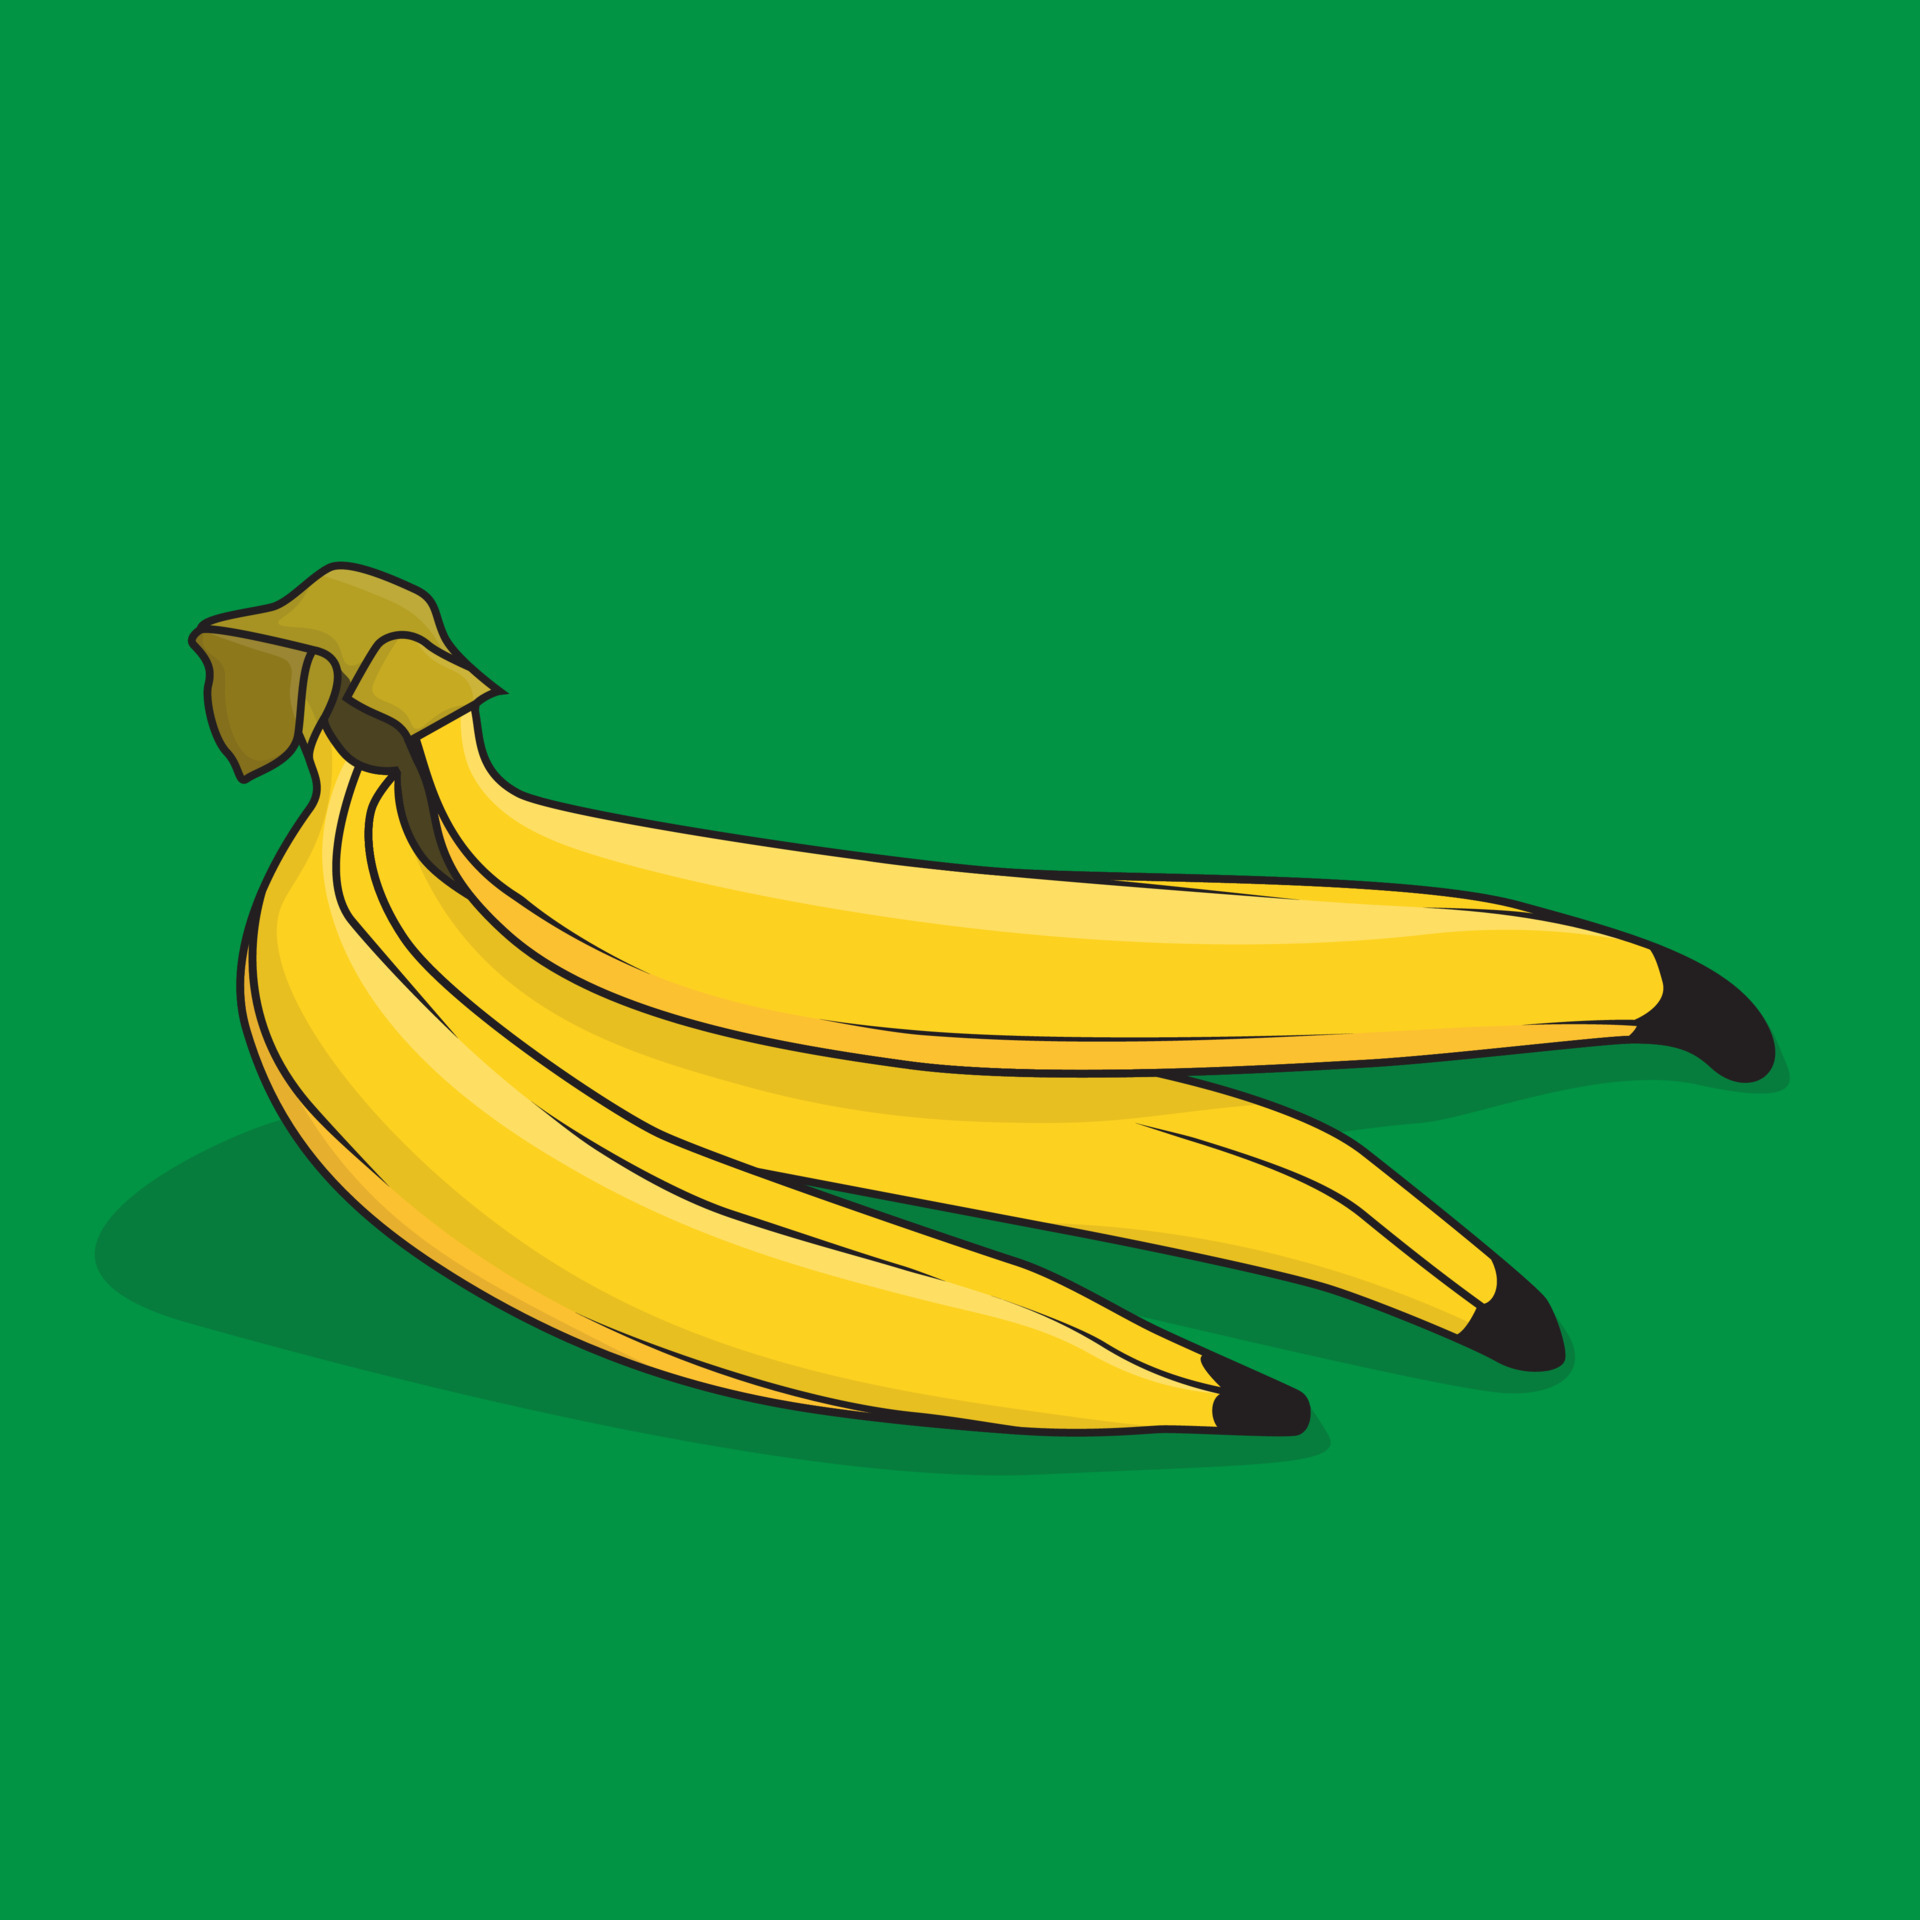 Asl banana cartoon